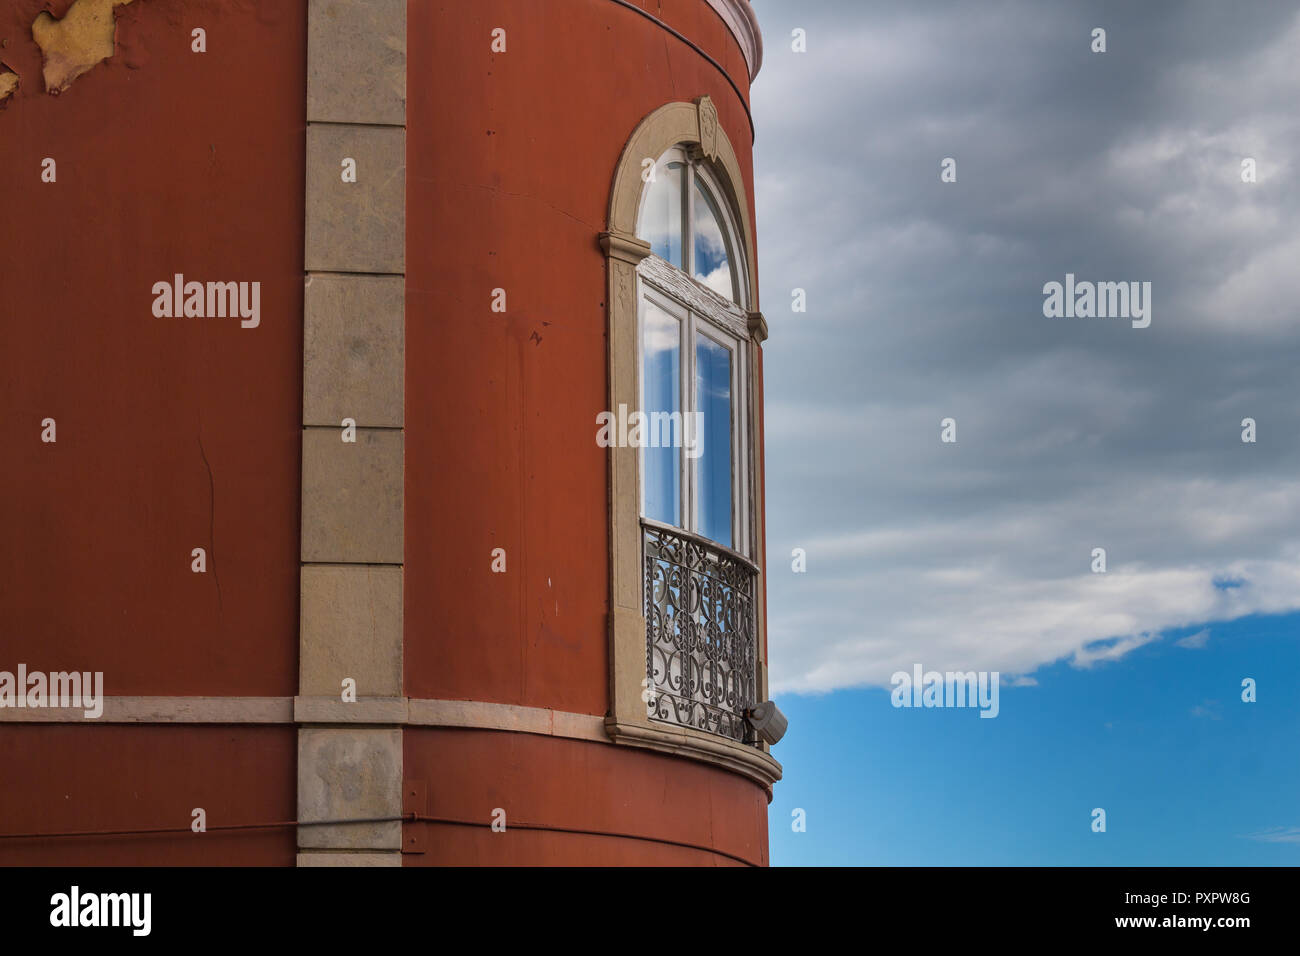 Forme arrondie de la chambre avec bourgogne façade peinte. Fenêtre avec un arc et ornementé de grille le balcon. Réflexion du ciel. Banque D'Images